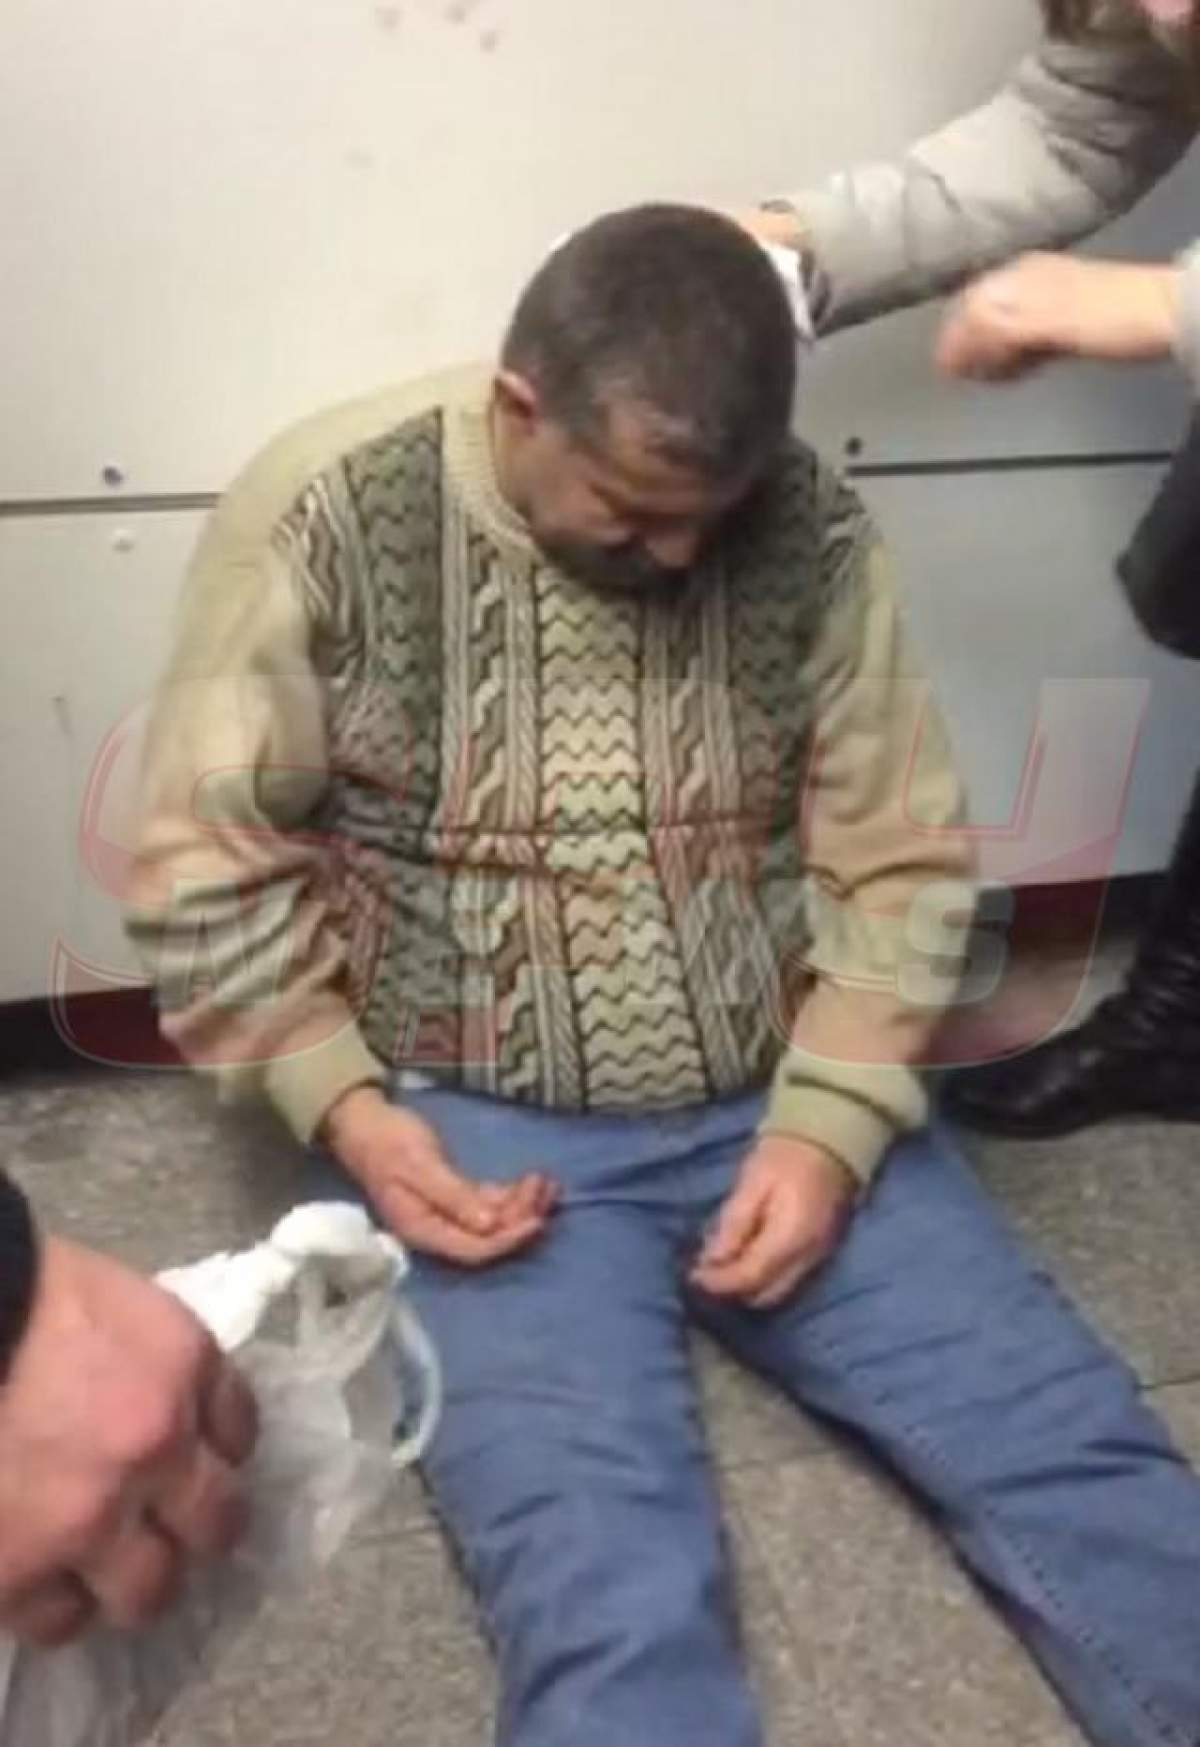 VIDEO / Incident şocant în Capitală! Un bărbat şi-a spart capul, după ce a căzut pe scările rulante